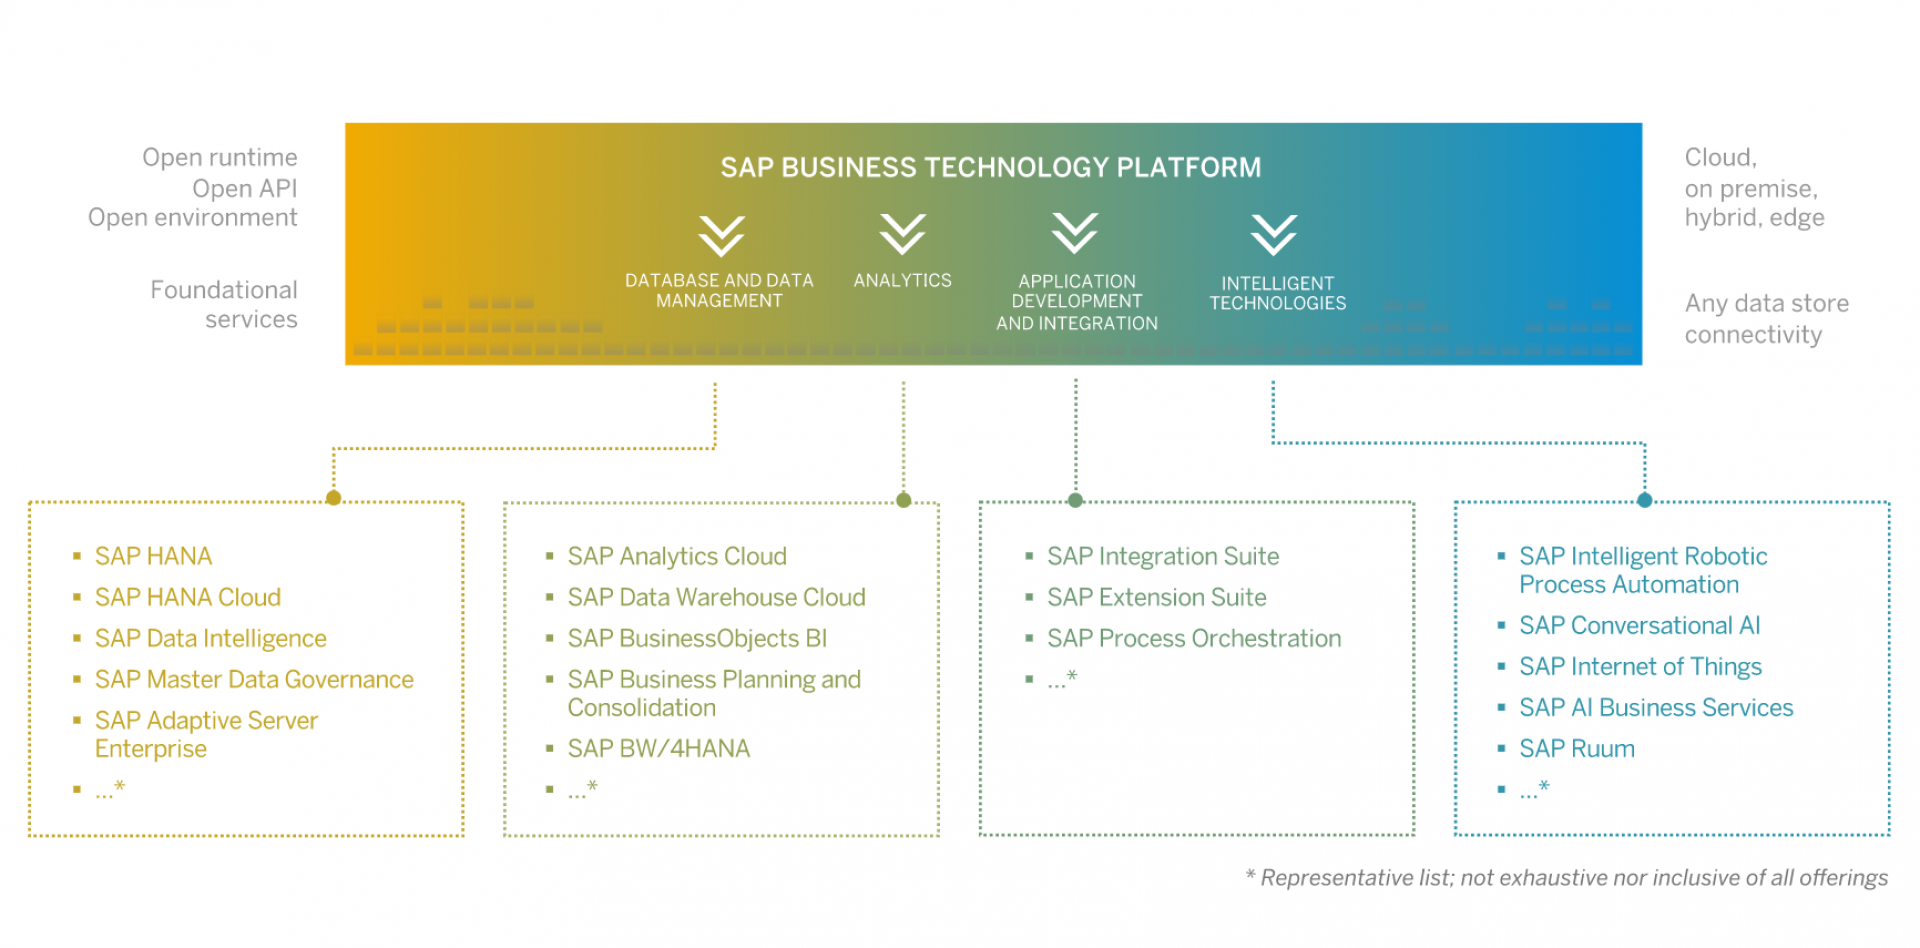 Abbildung 1: Die SAP Business Technology Platform